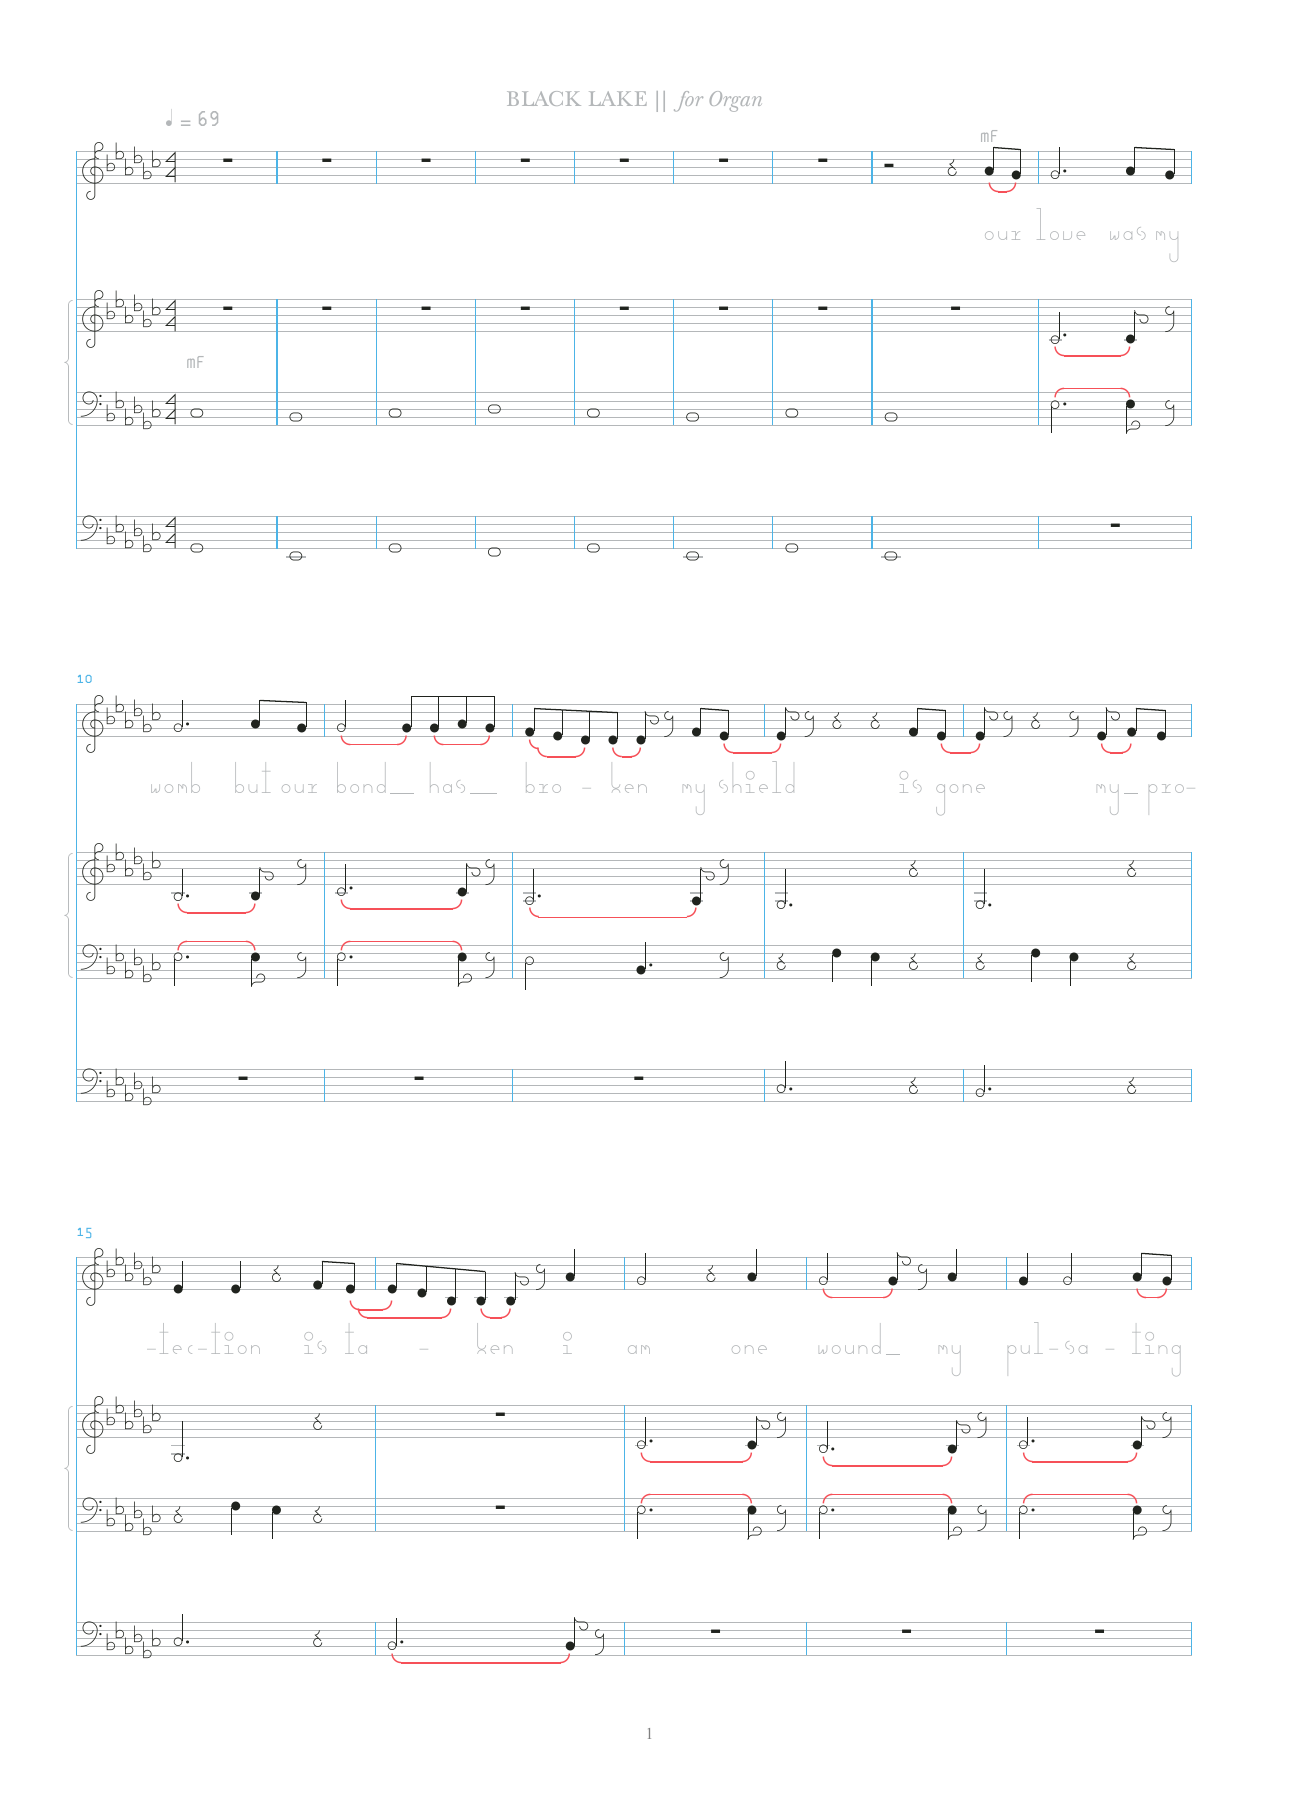 Bjork Black Lake Sheet Music Notes & Chords for Organ & Vocal - Download or Print PDF